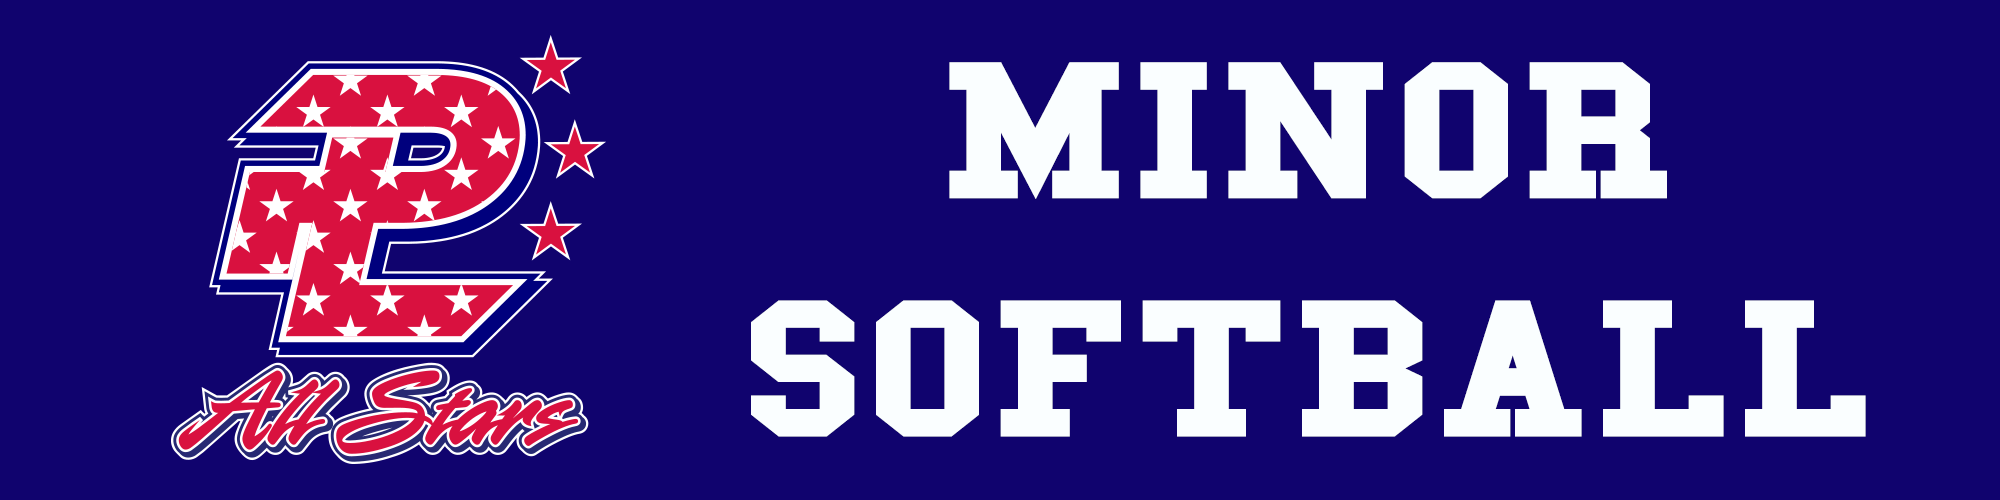 Minor Softball